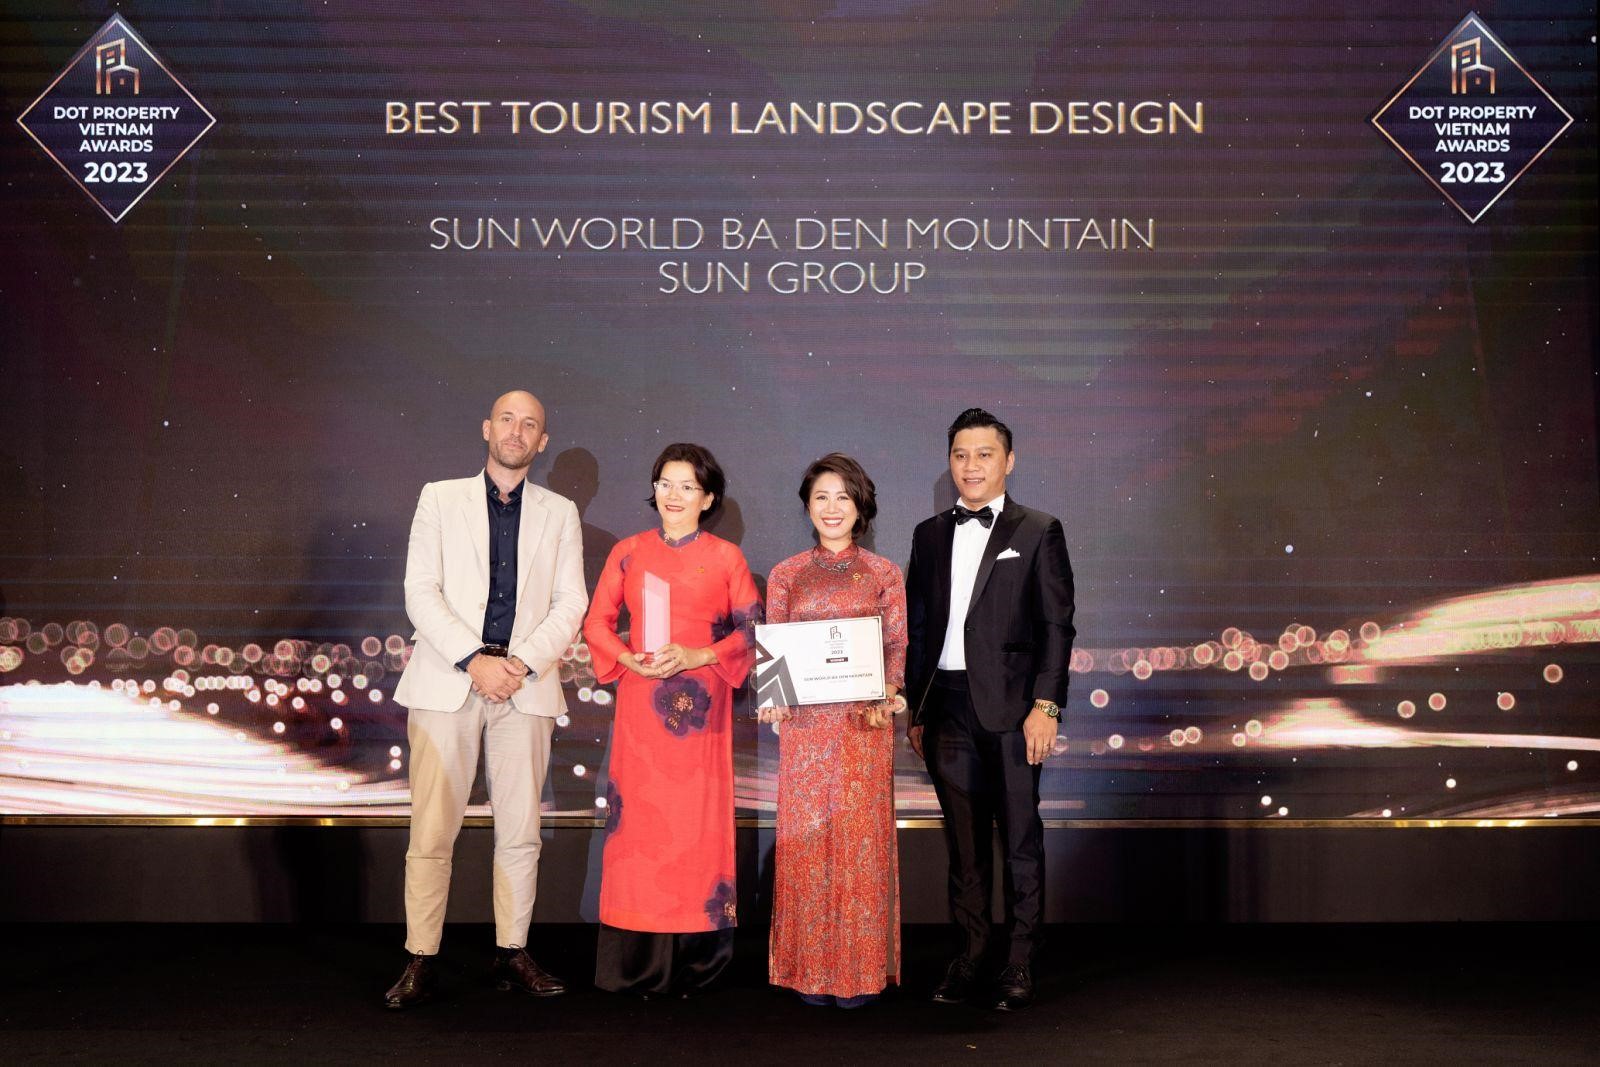 Kinh tế - Sun World Ba Den Mountain thắng giải “khu du lịch có thiết kế cảnh quan đẹp nhất Việt Nam 2023” (Hình 2).